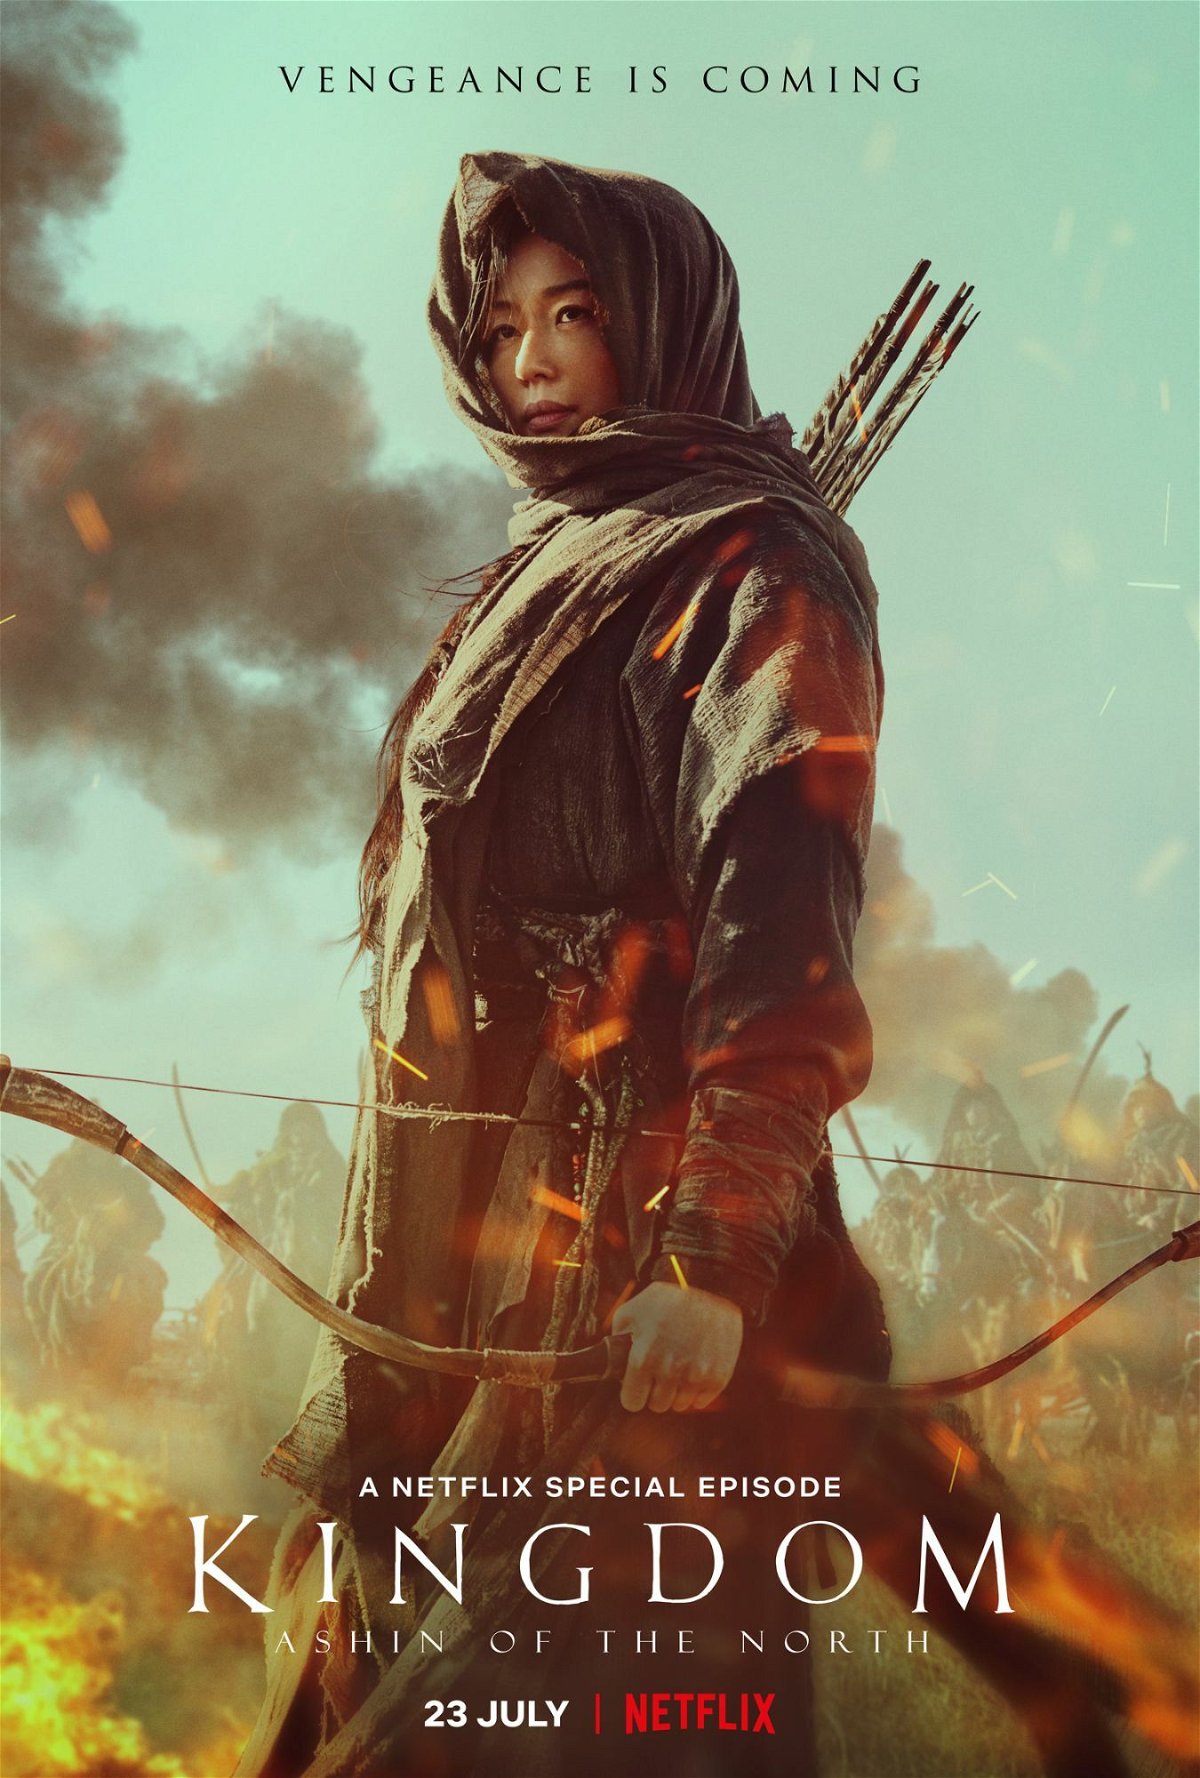 Gianna Jun nel poster dello speciale Kingdom: Ashin of the North